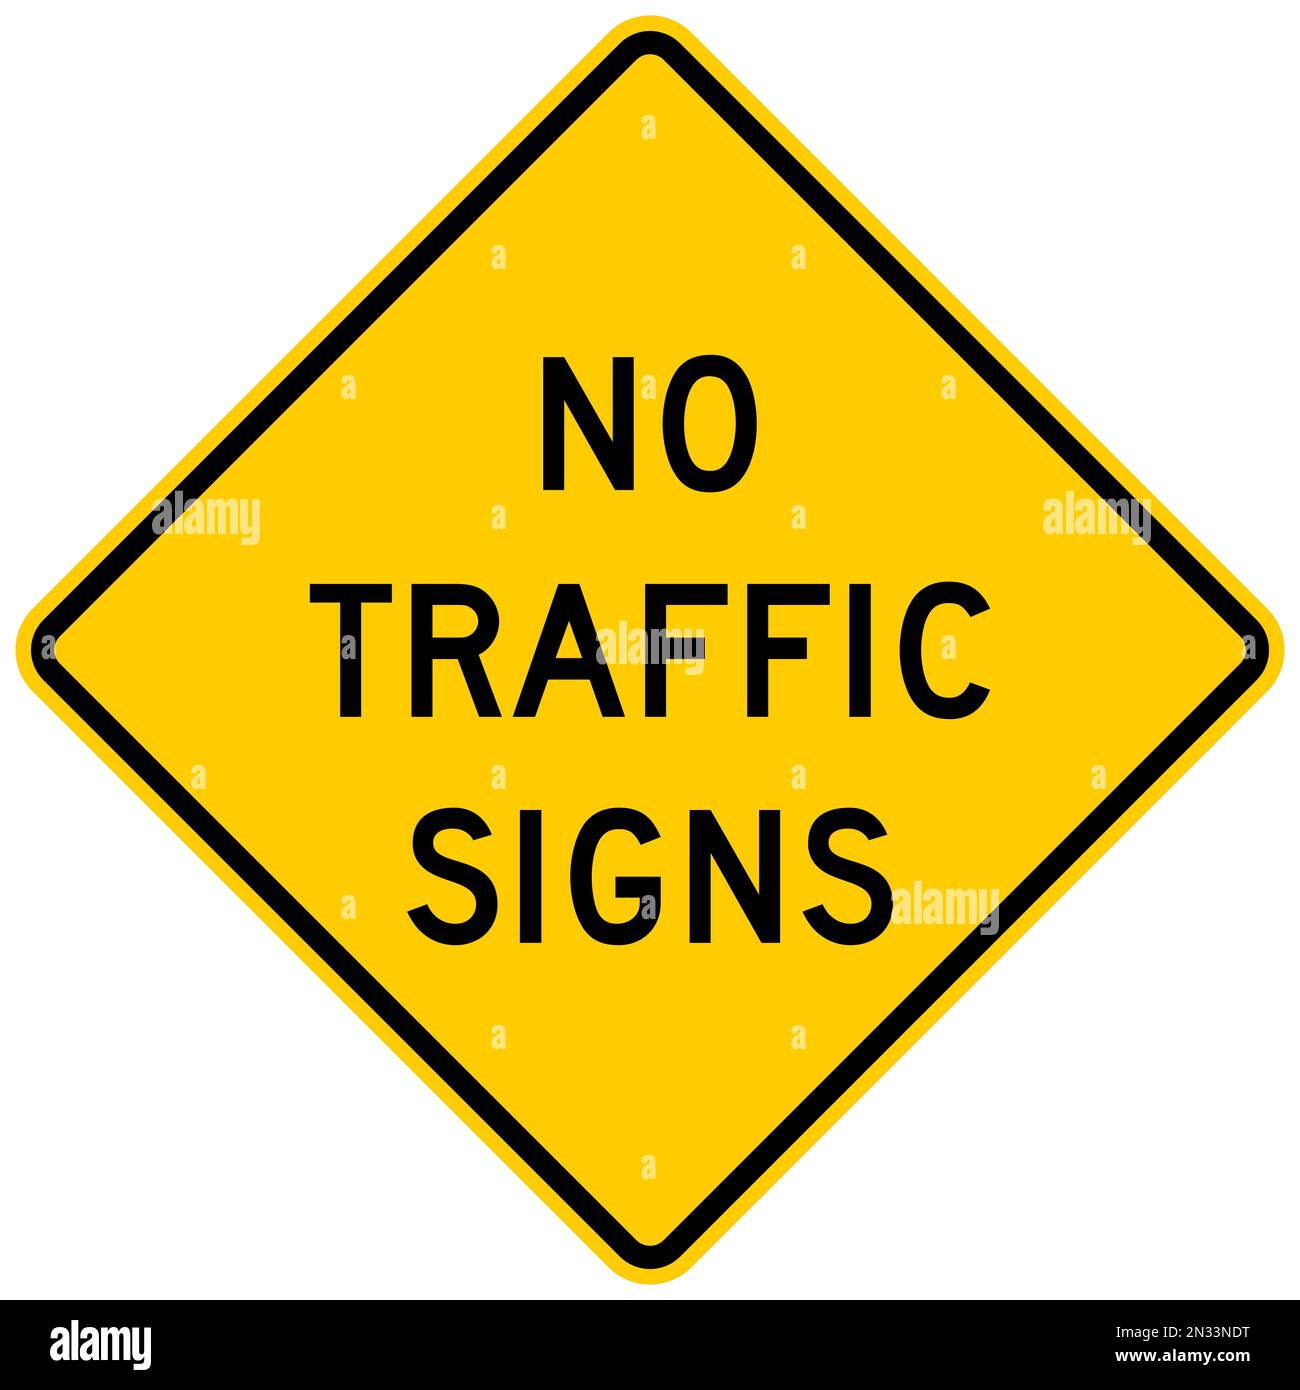 No traffic signs warning sign Stock Photo